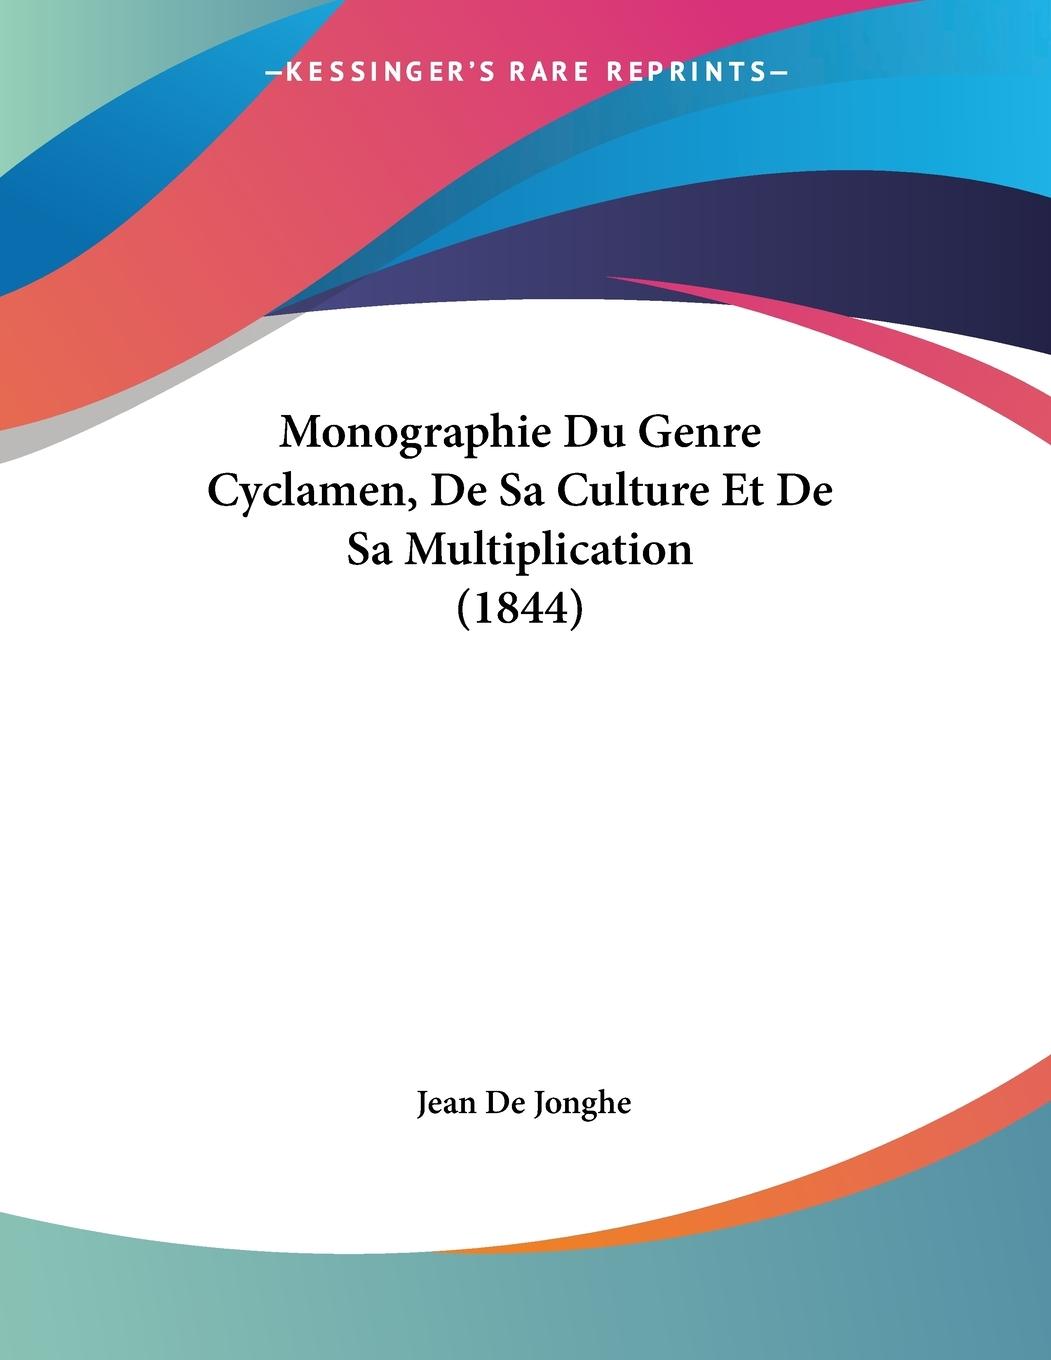 Monographie Du Genre Cyclamen, De Sa Culture Et De Sa Multiplication (1844) - De Jonghe, Jean